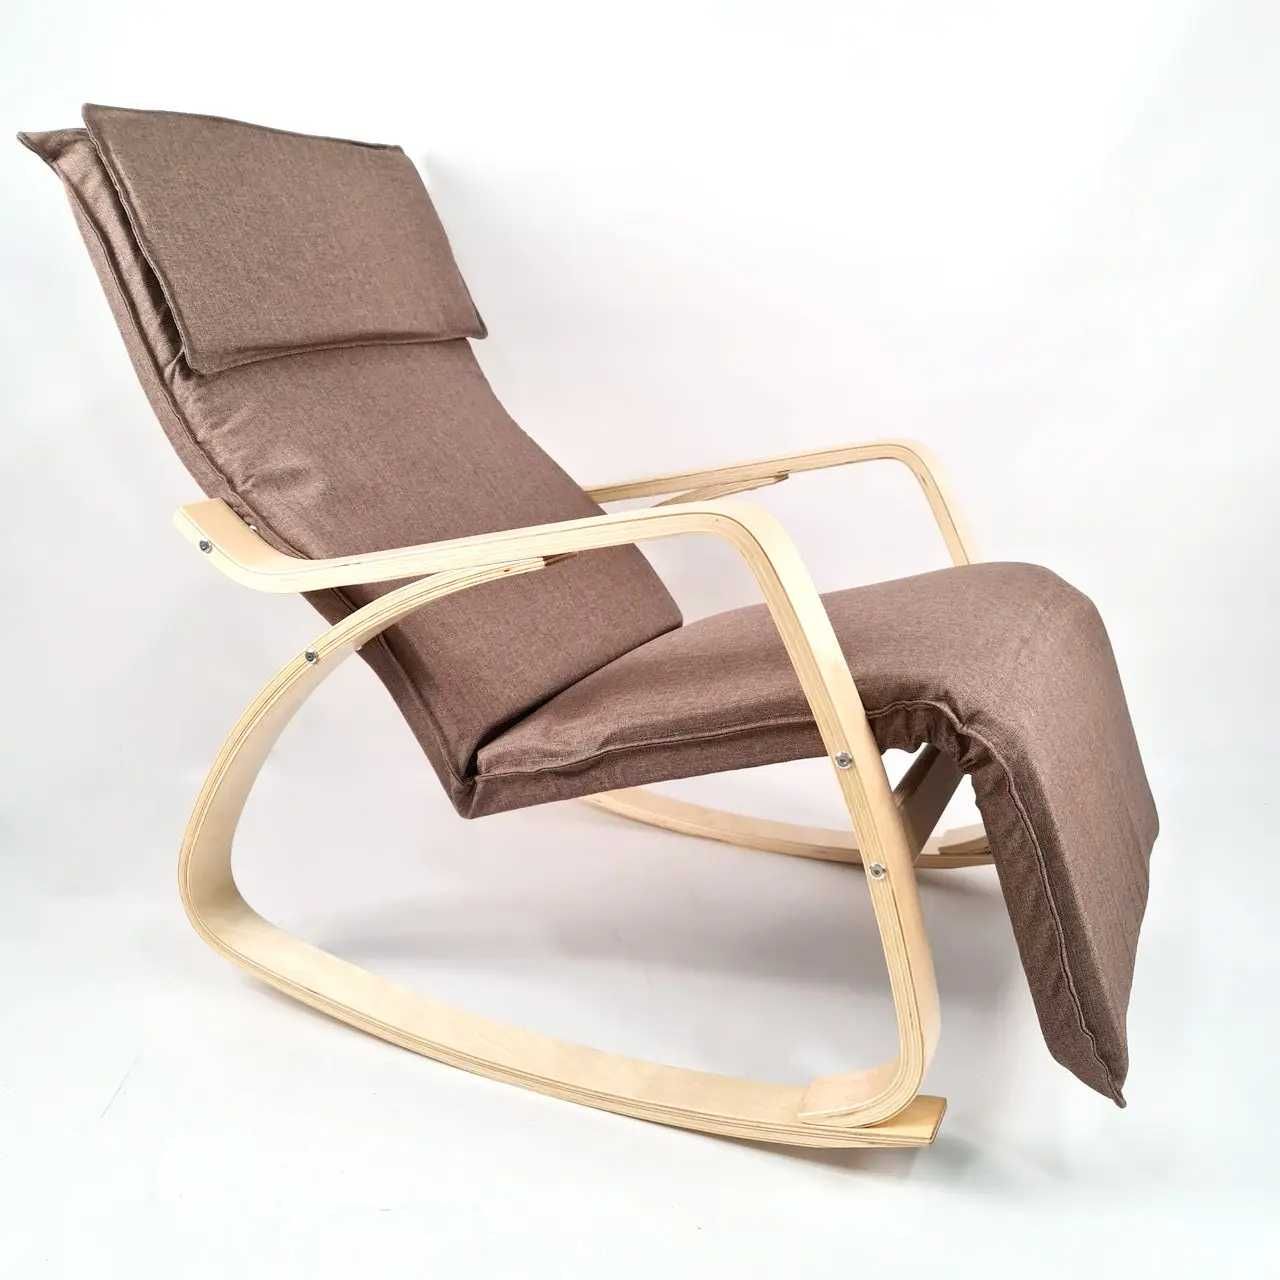 Крісло гойдалка для квартири, кресло качалка Style RC002 Natural Latte